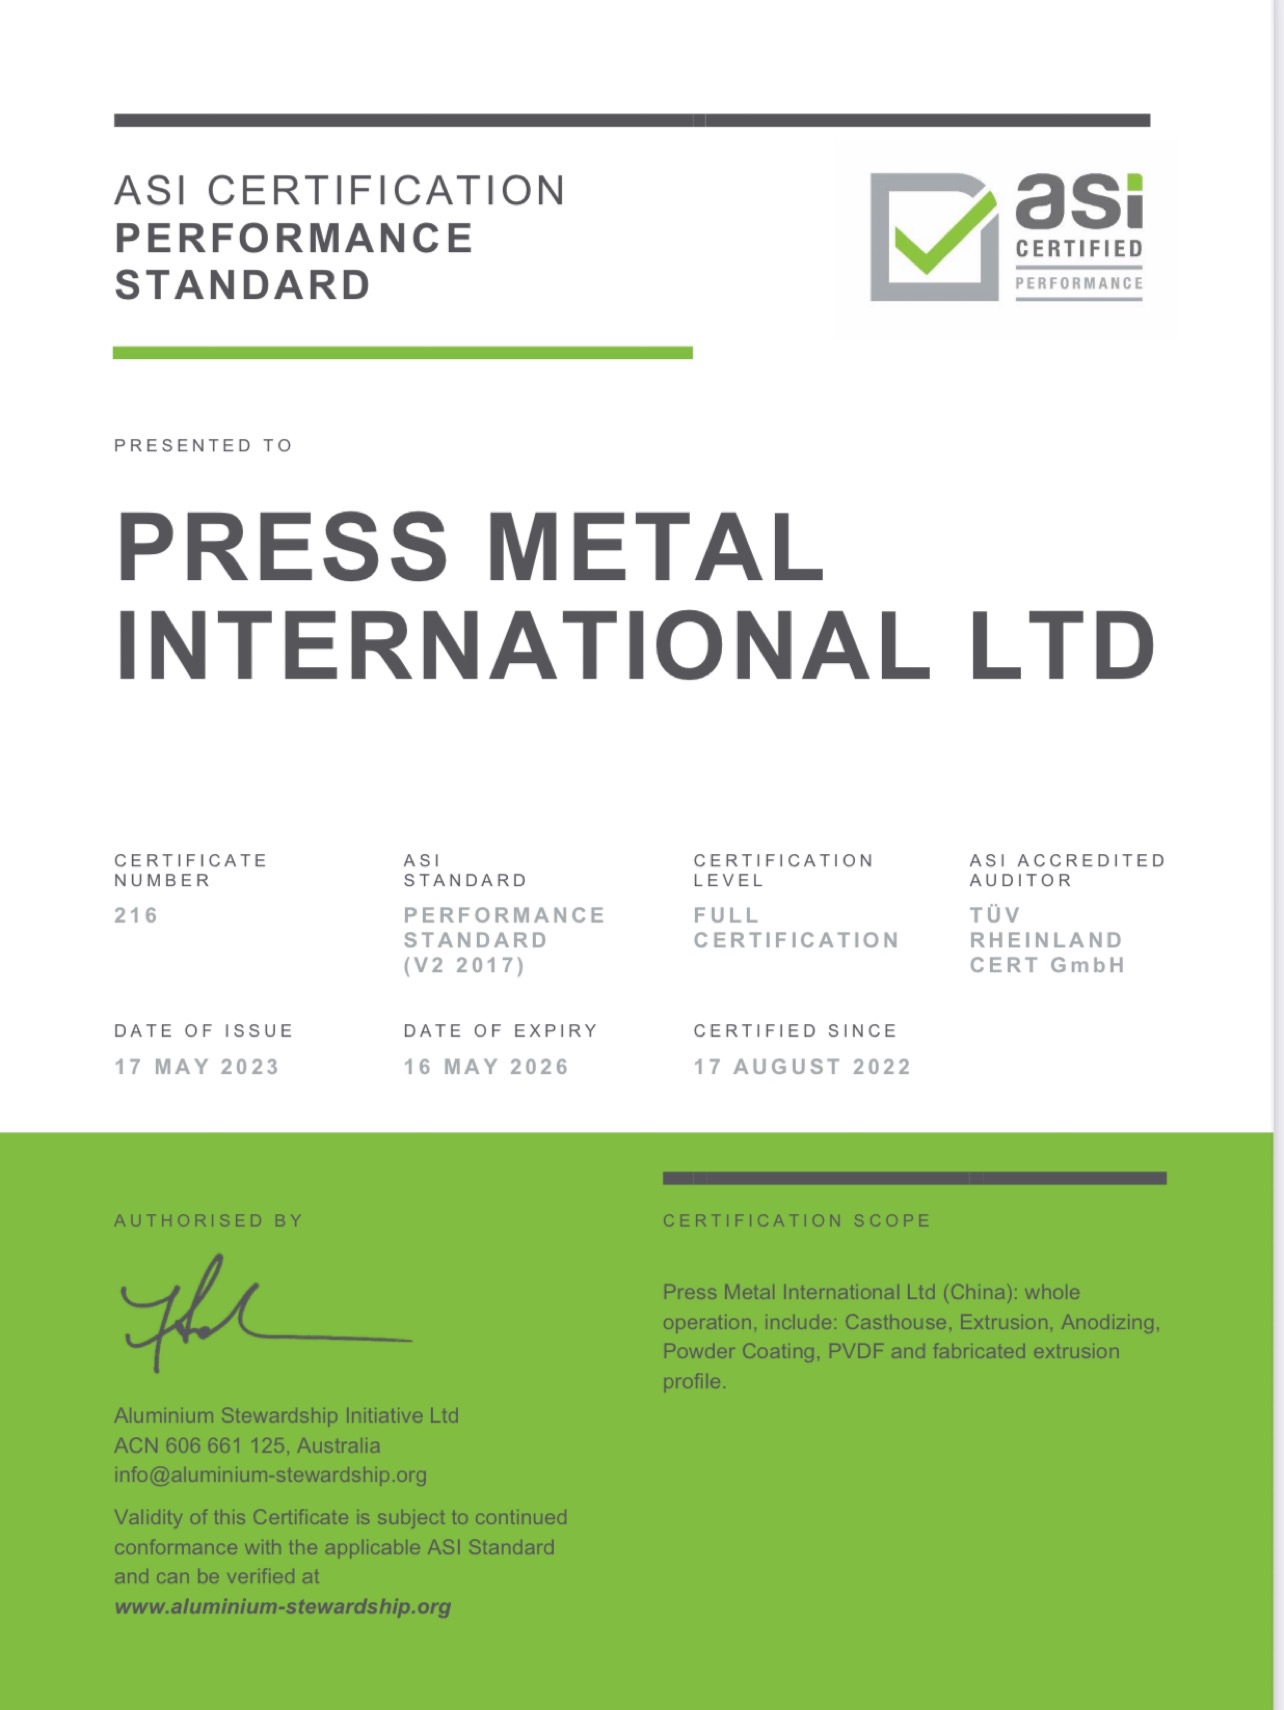 铝业管理倡议ASI绩效标准认证